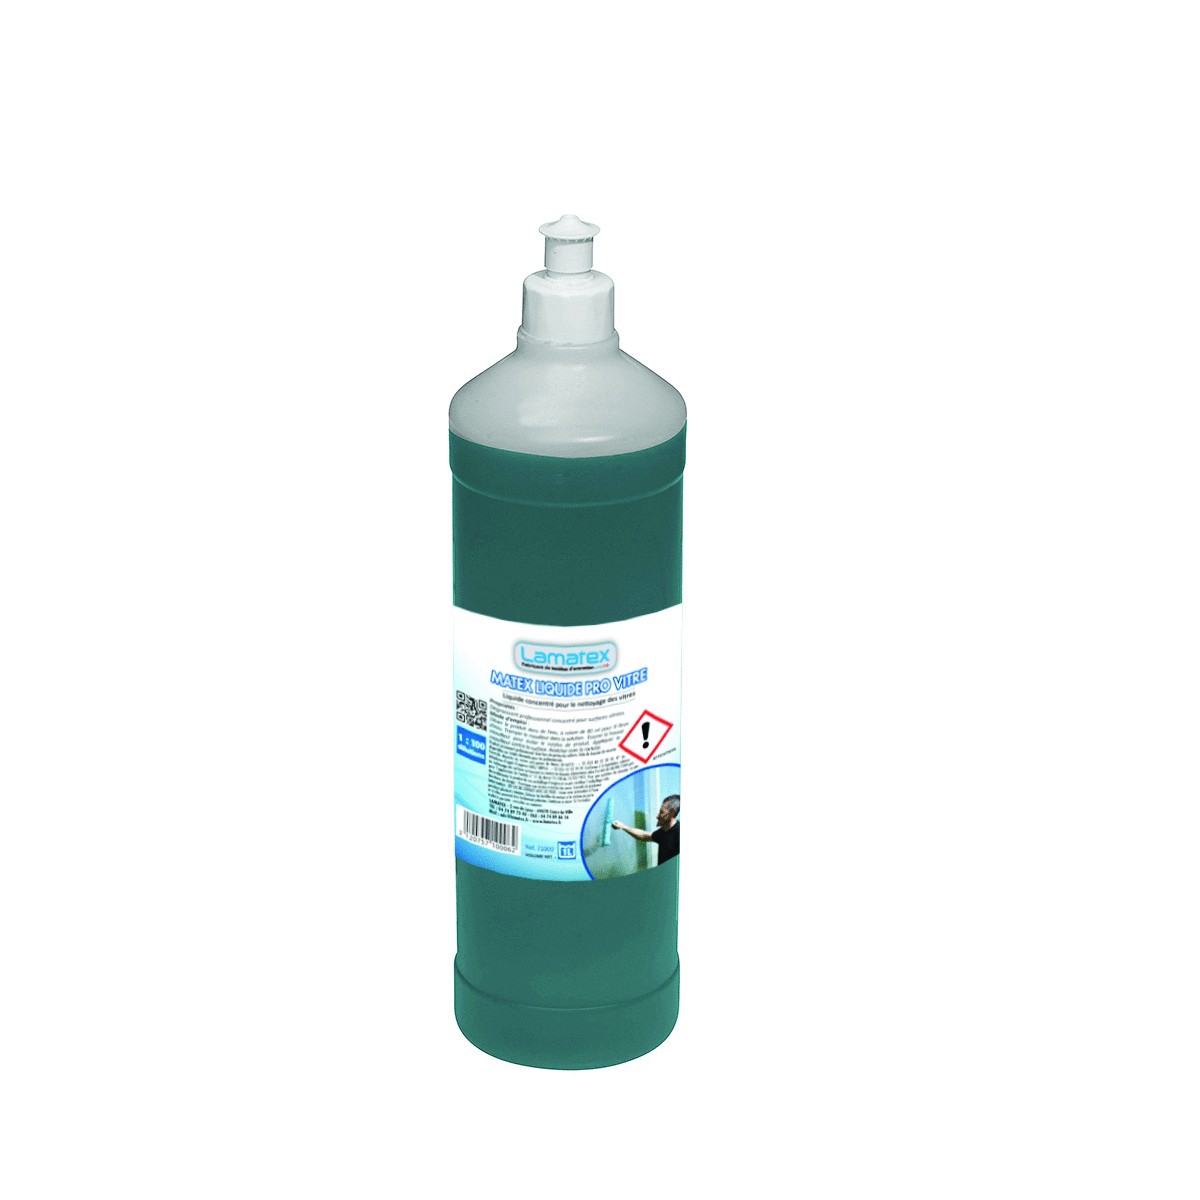 MATEX PRO VITRE produit lavage vitre flacon de 1 litre - Hypronet